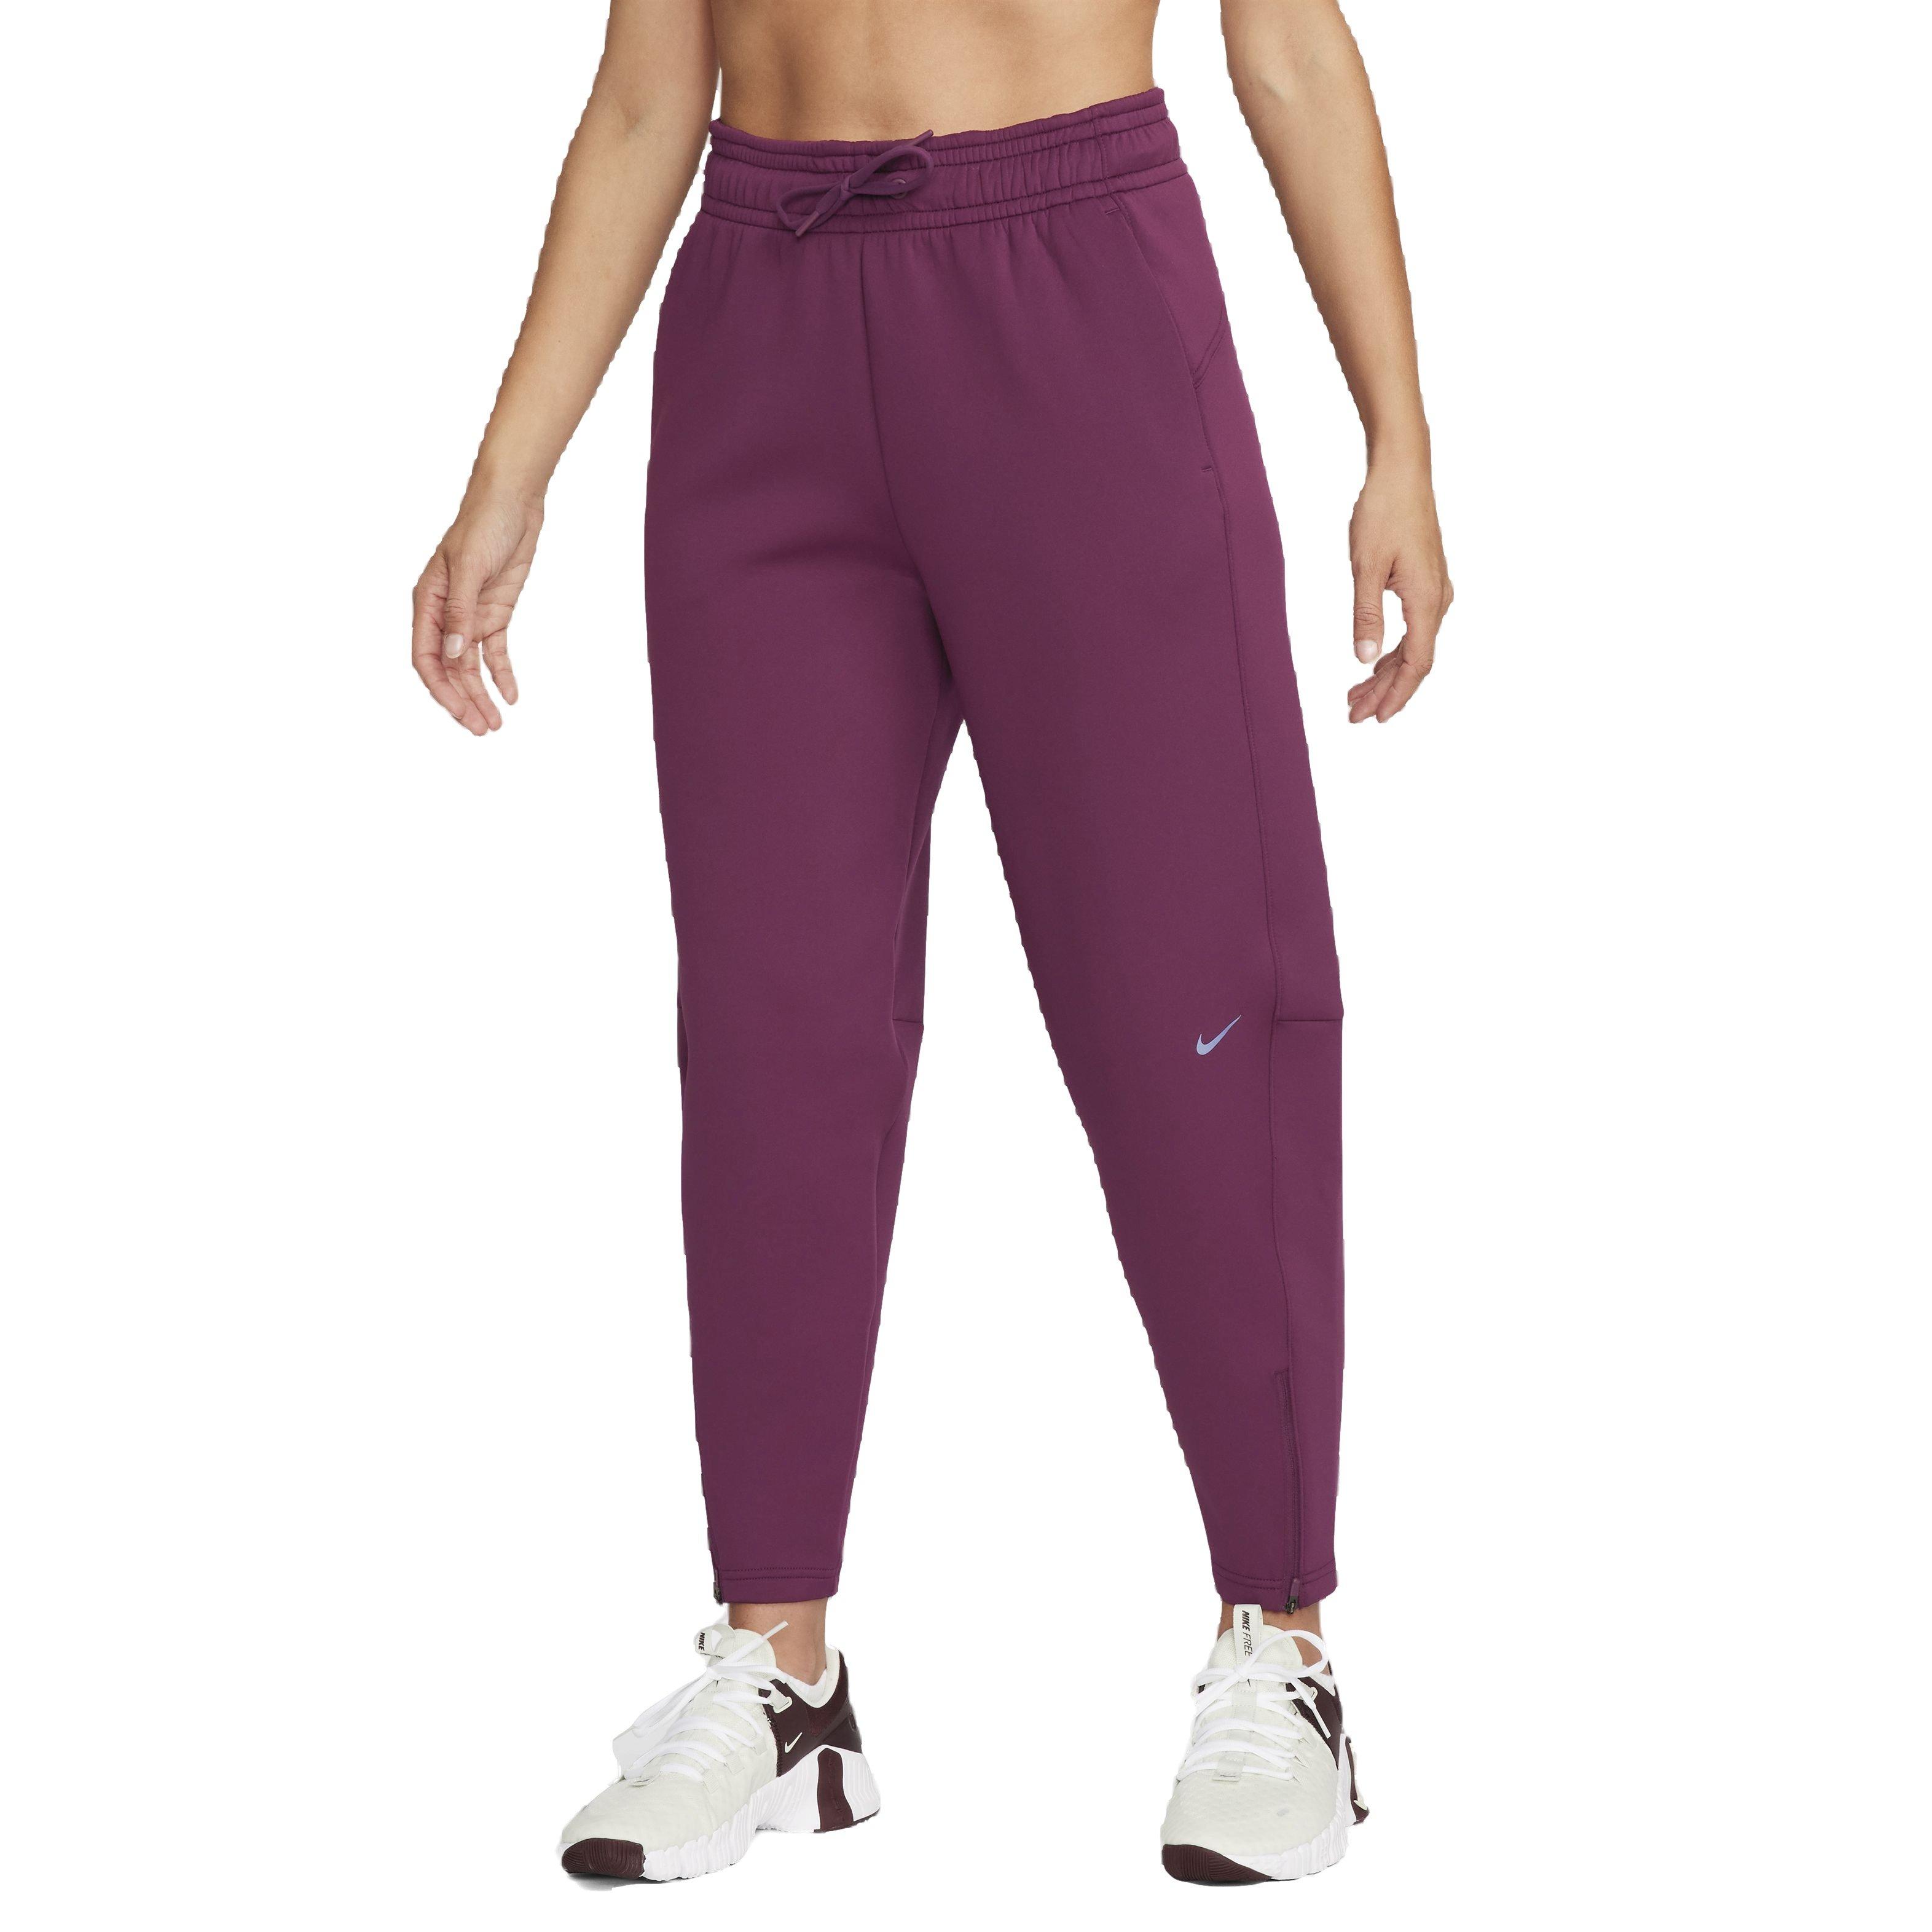 Nike Women's Dri-FIT Prima High-Rise 7/8 Training Pants - Bordeaux